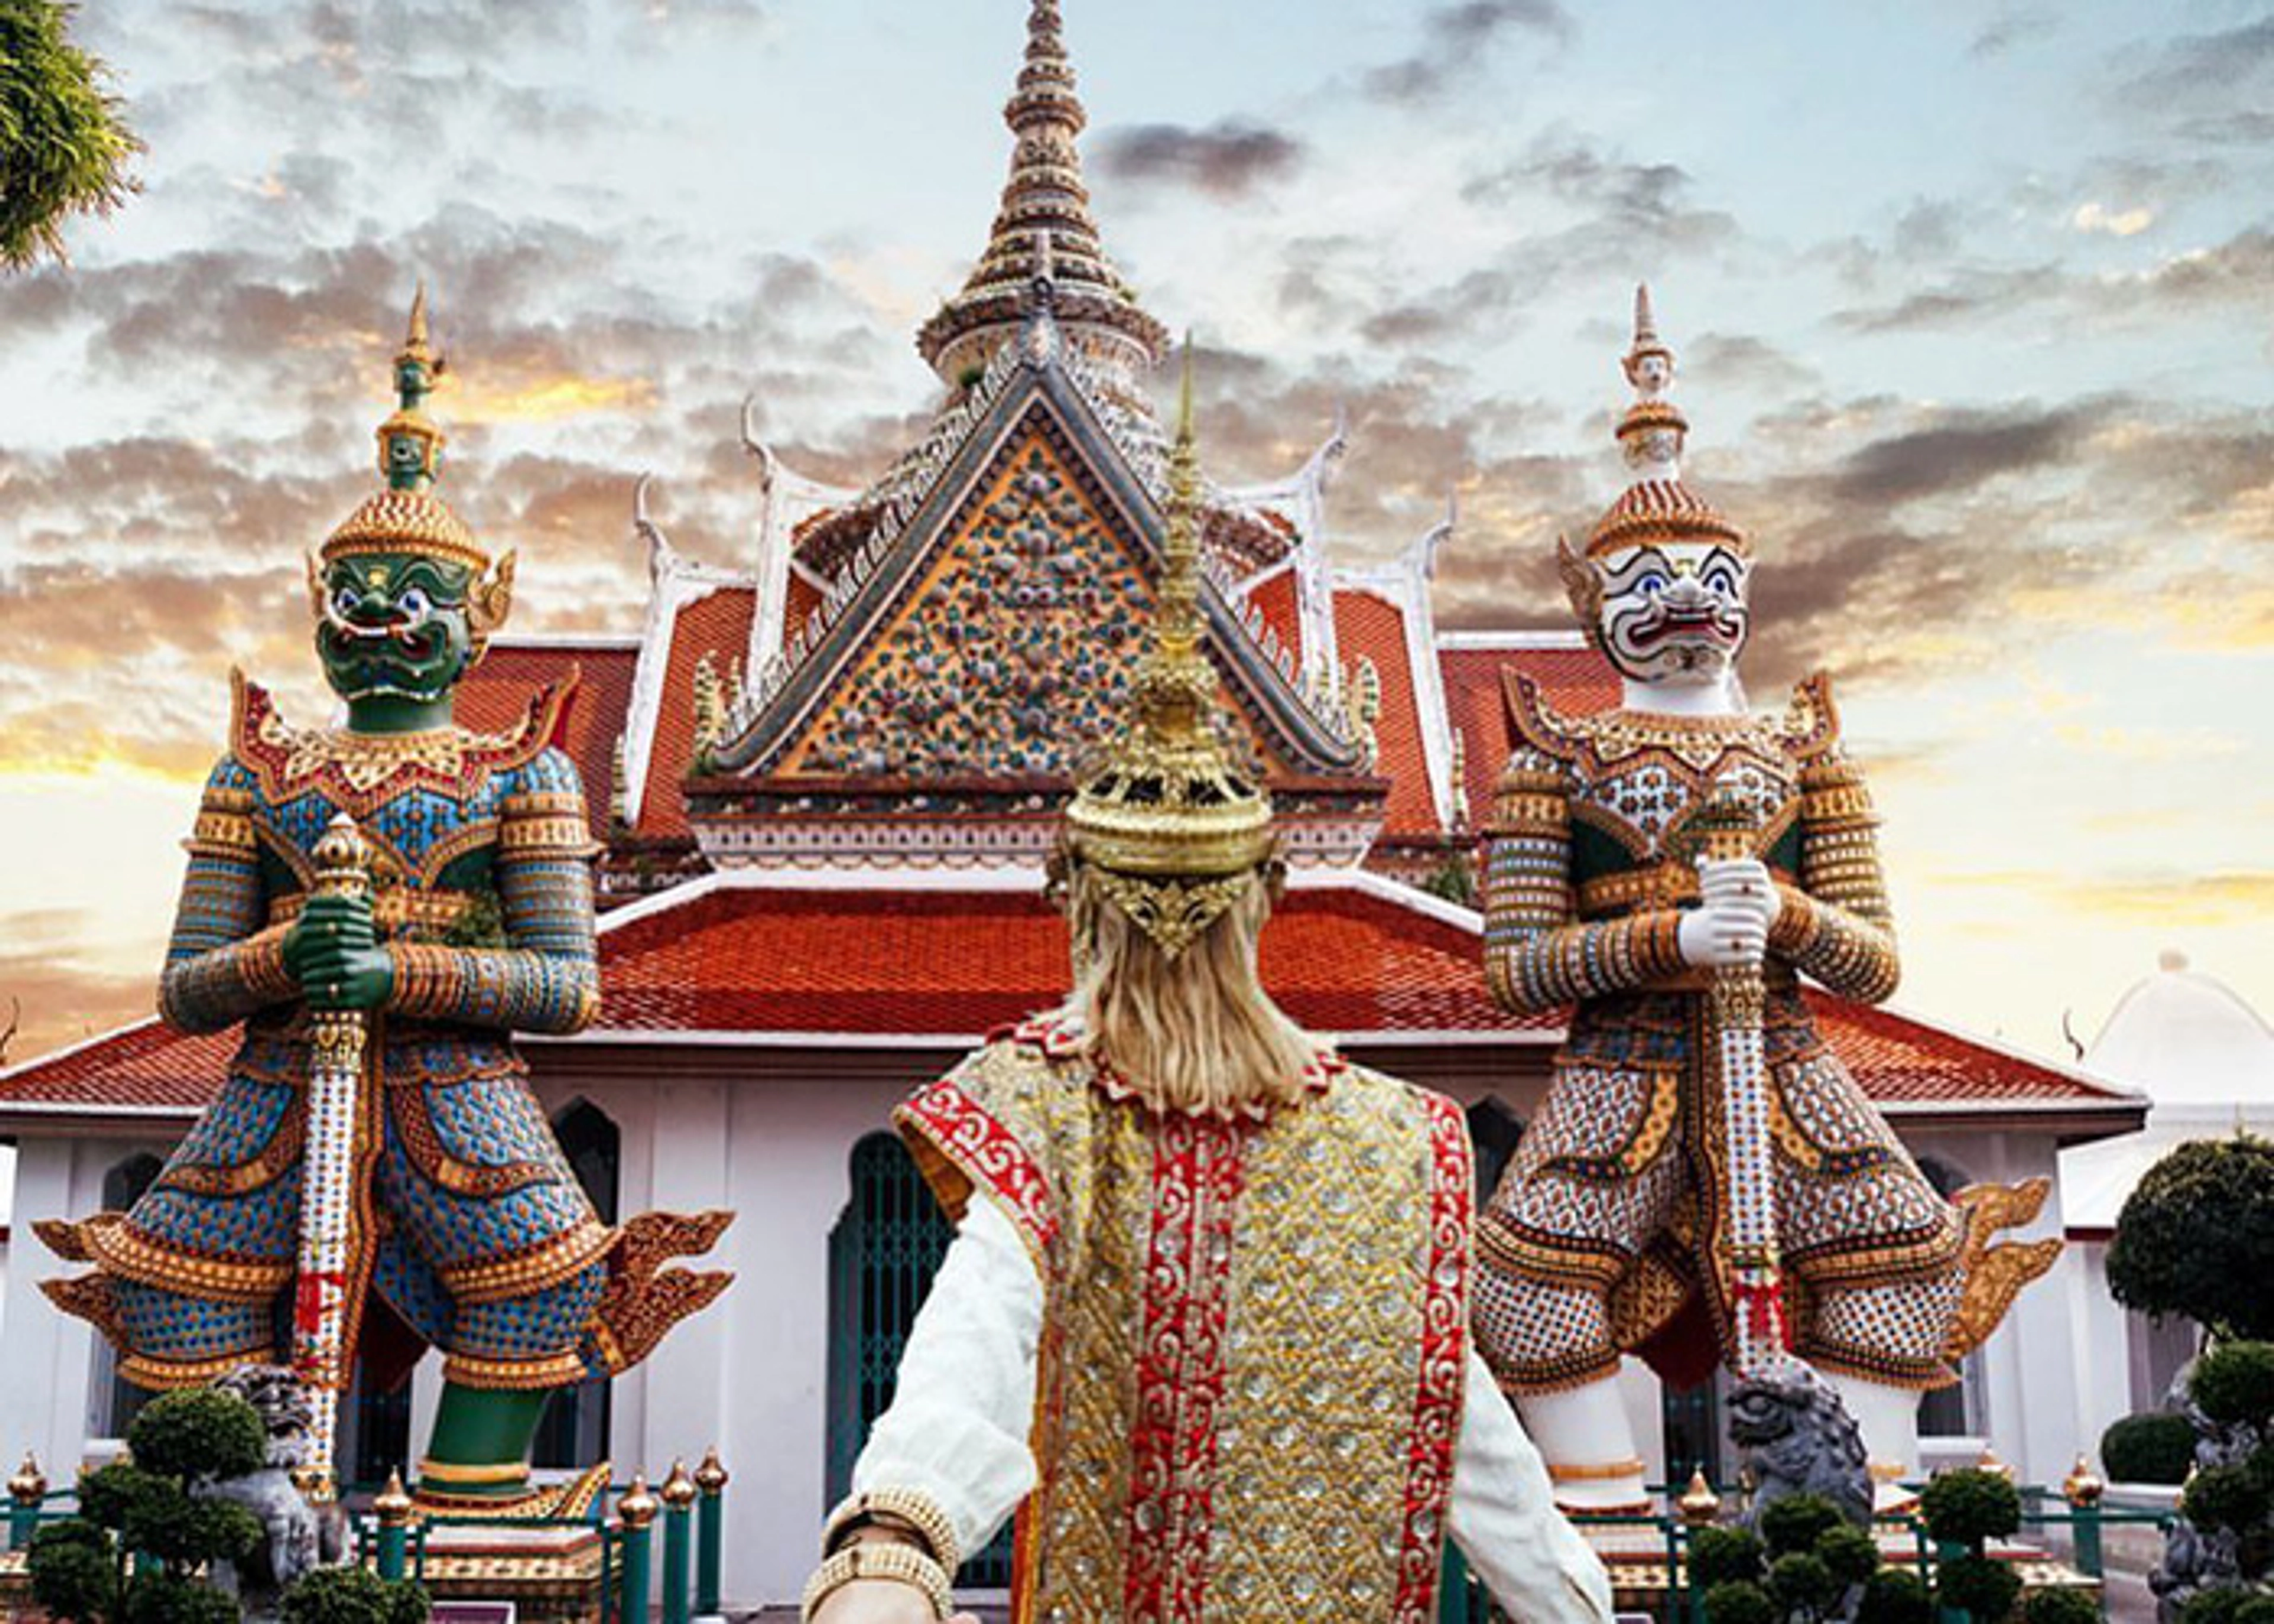 SEA LIFE Bangkok Ocean World là một trong những điểm đến du lịch nổi tiếng tại Thái Lan